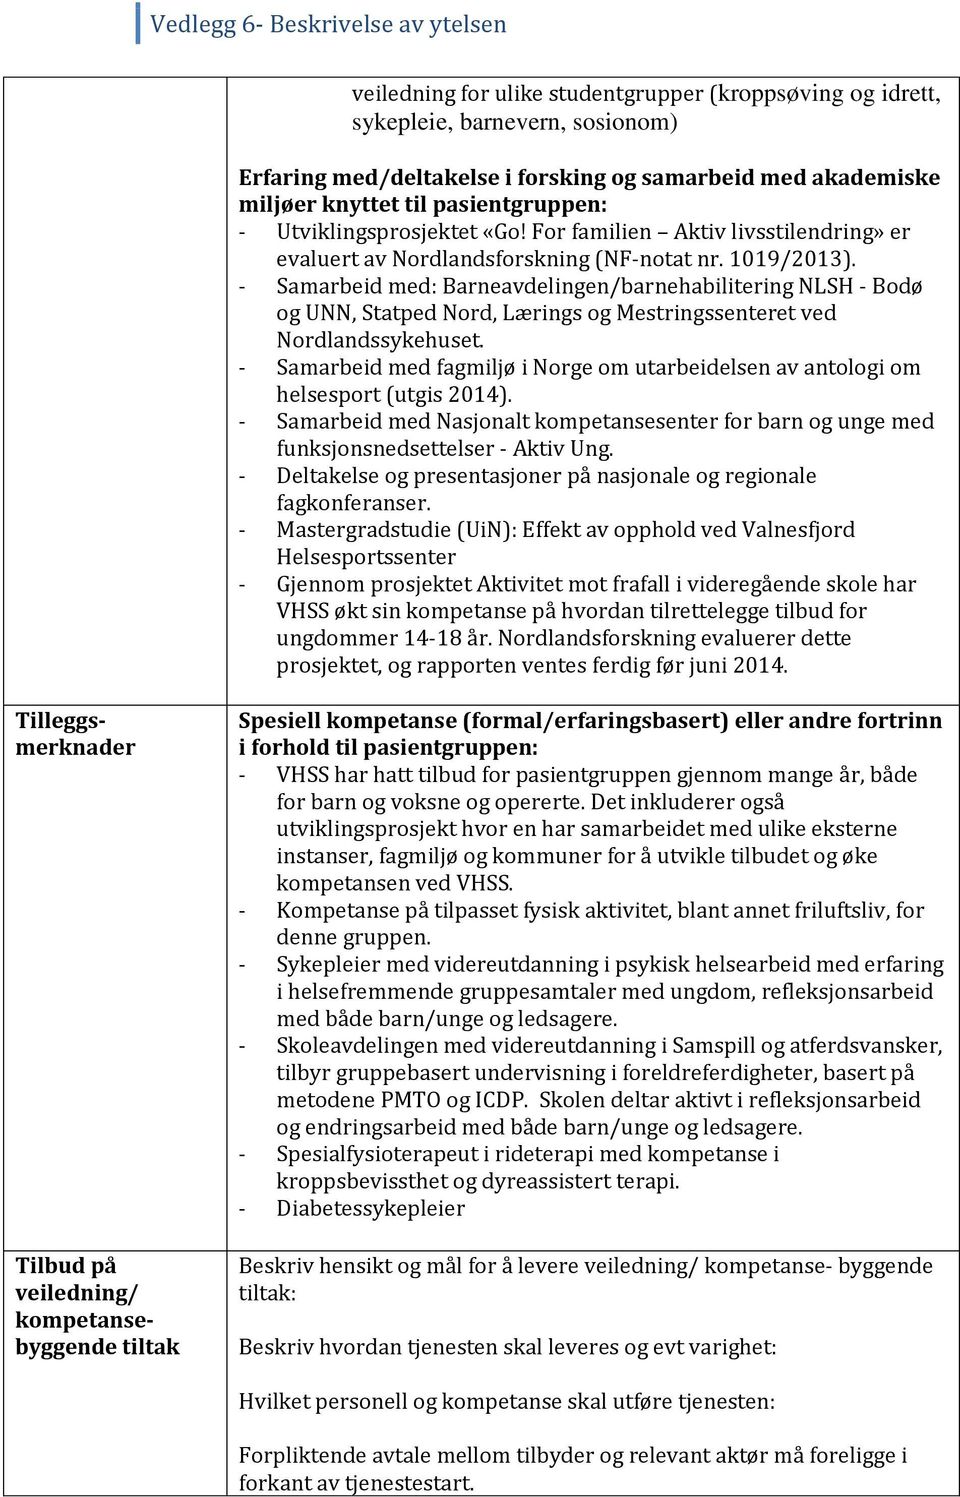 - Samarbeid med: Barneavdelingen/barnehabilitering NLSH - Bodø og UNN, Statped Nord, Lærings og Mestringssenteret ved Nordlandssykehuset.